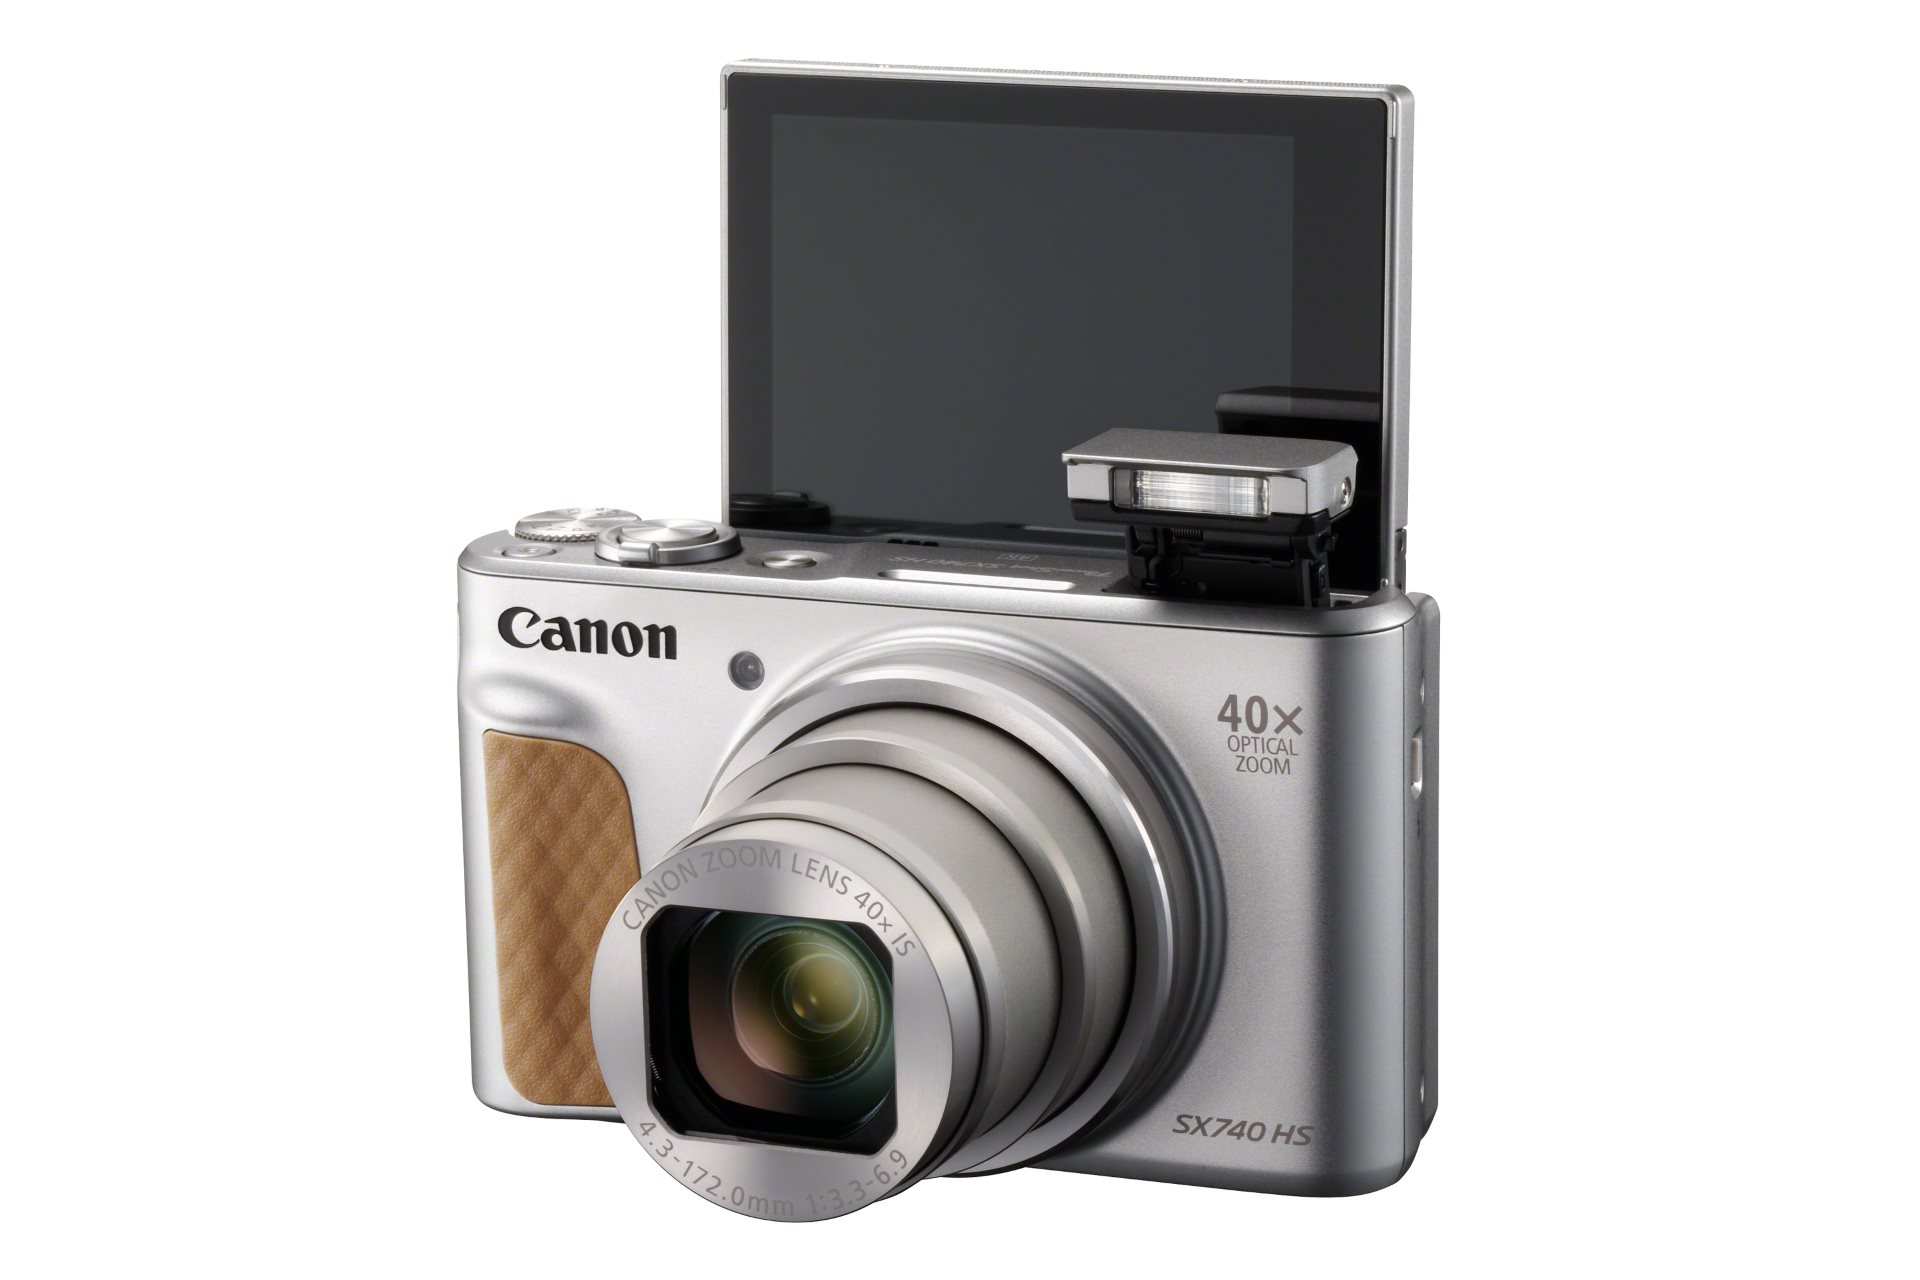 Компания Canon представляет PowerShot SX740 HS